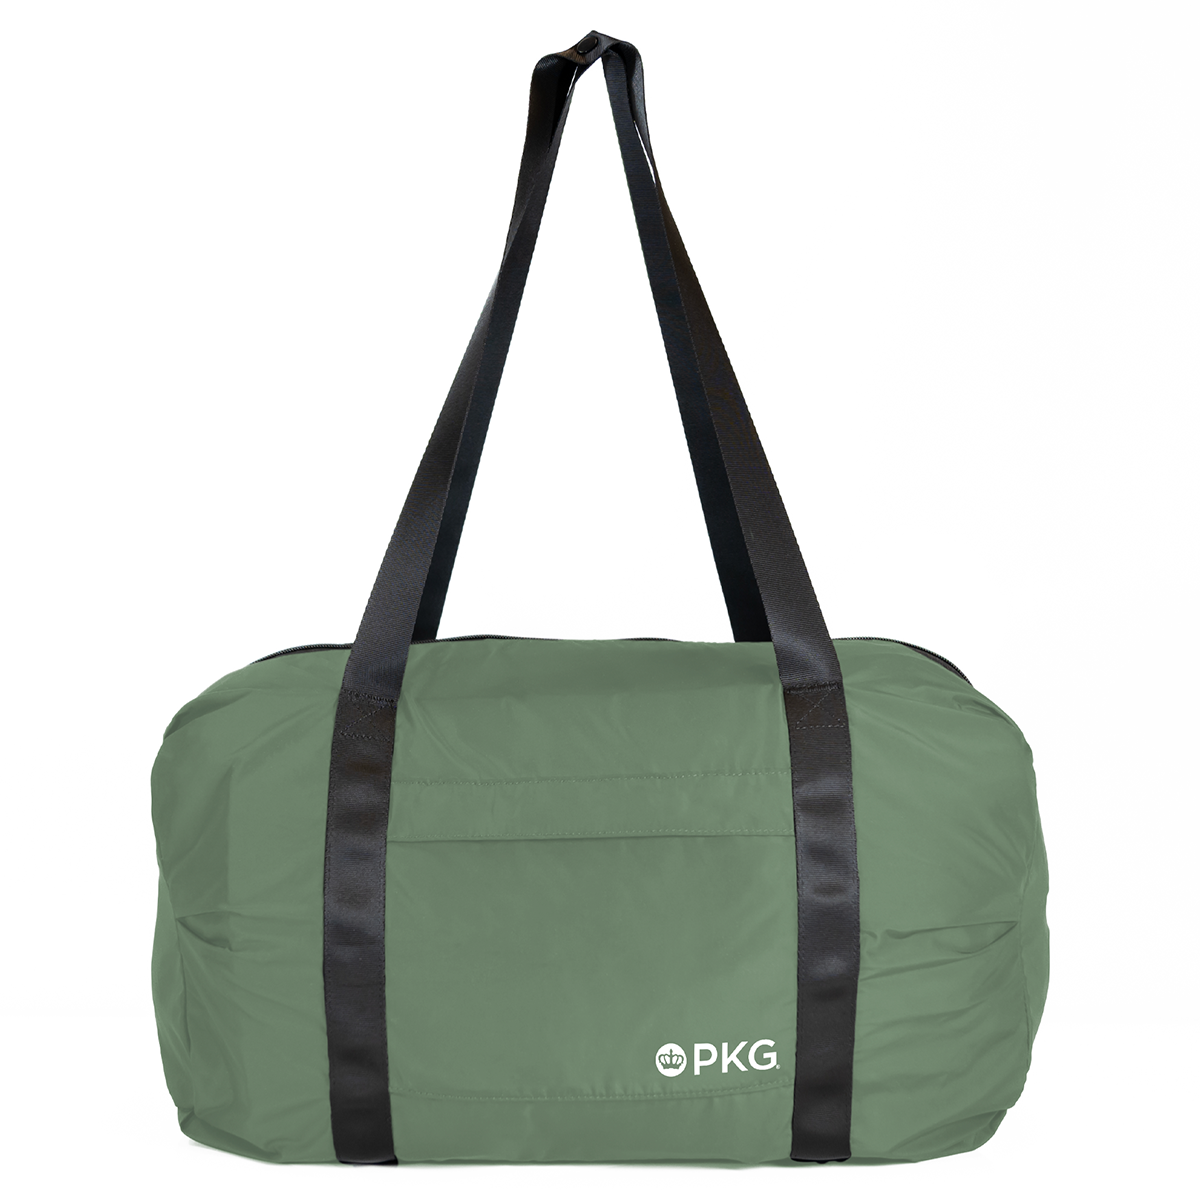 PKG Umiak Recycled Packable Duffel Bag